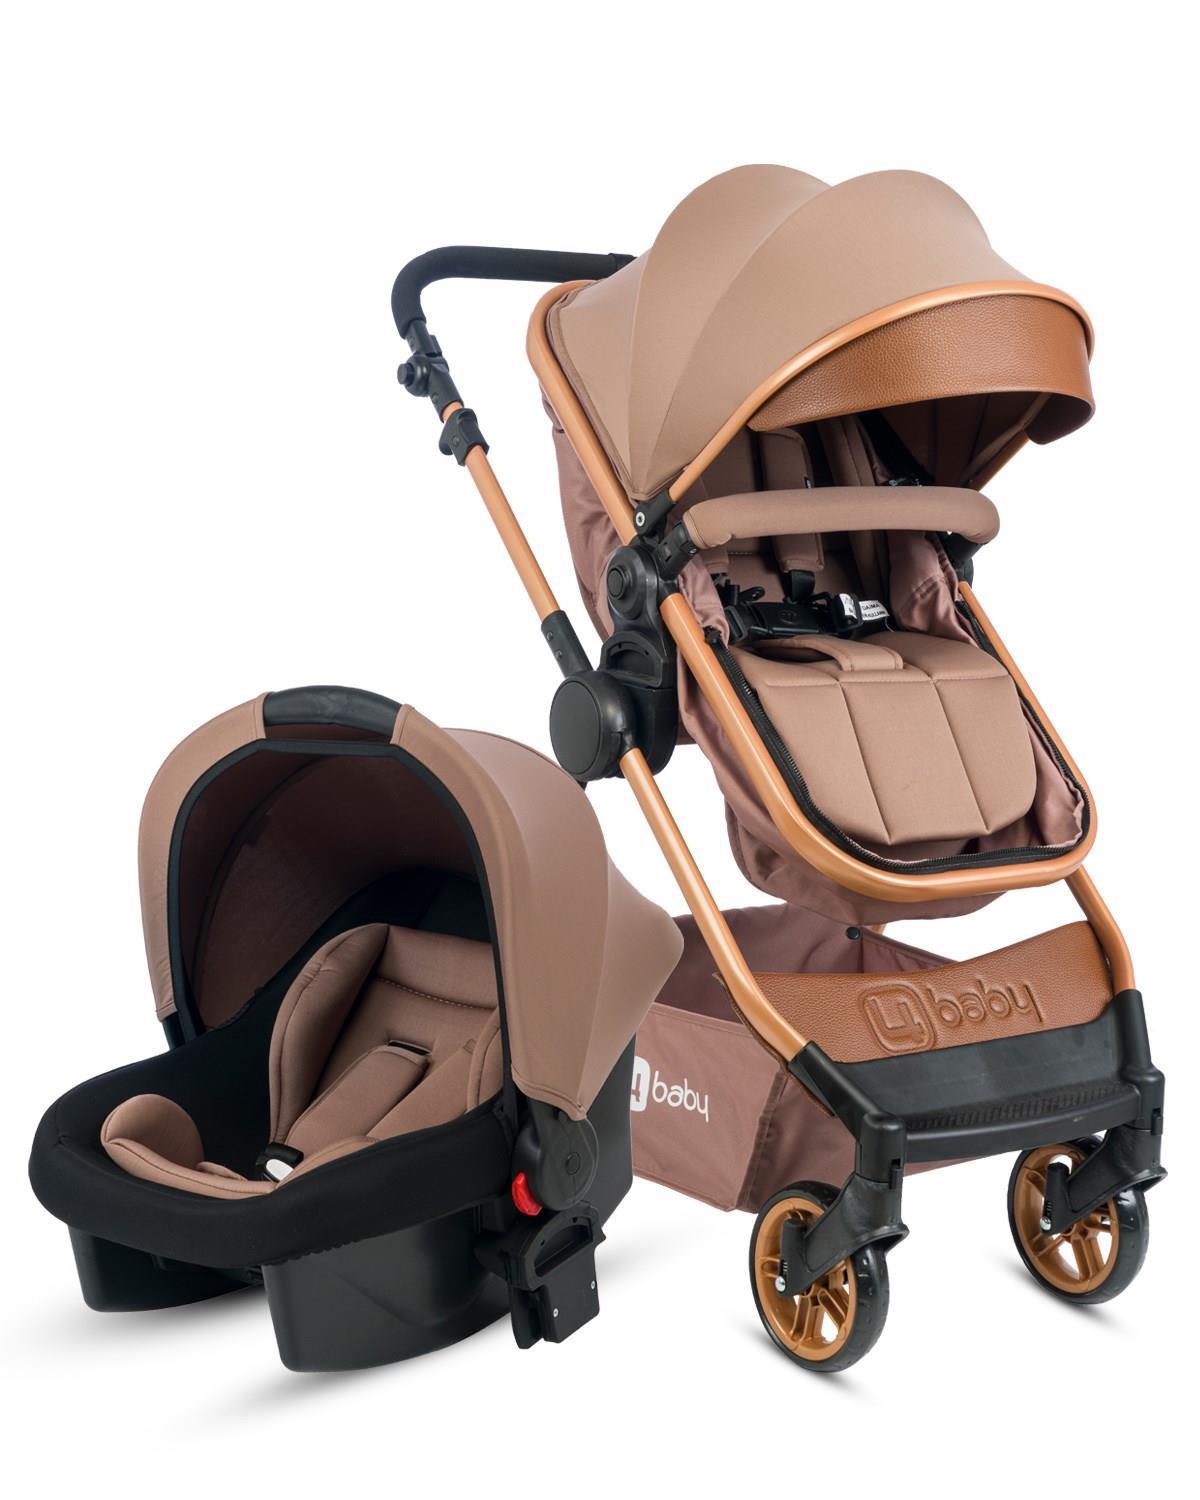 4 Baby AB-480 Cool Çift Yönlü Katlanabilir Travel Sistem Bebek Arabası Kahverengi